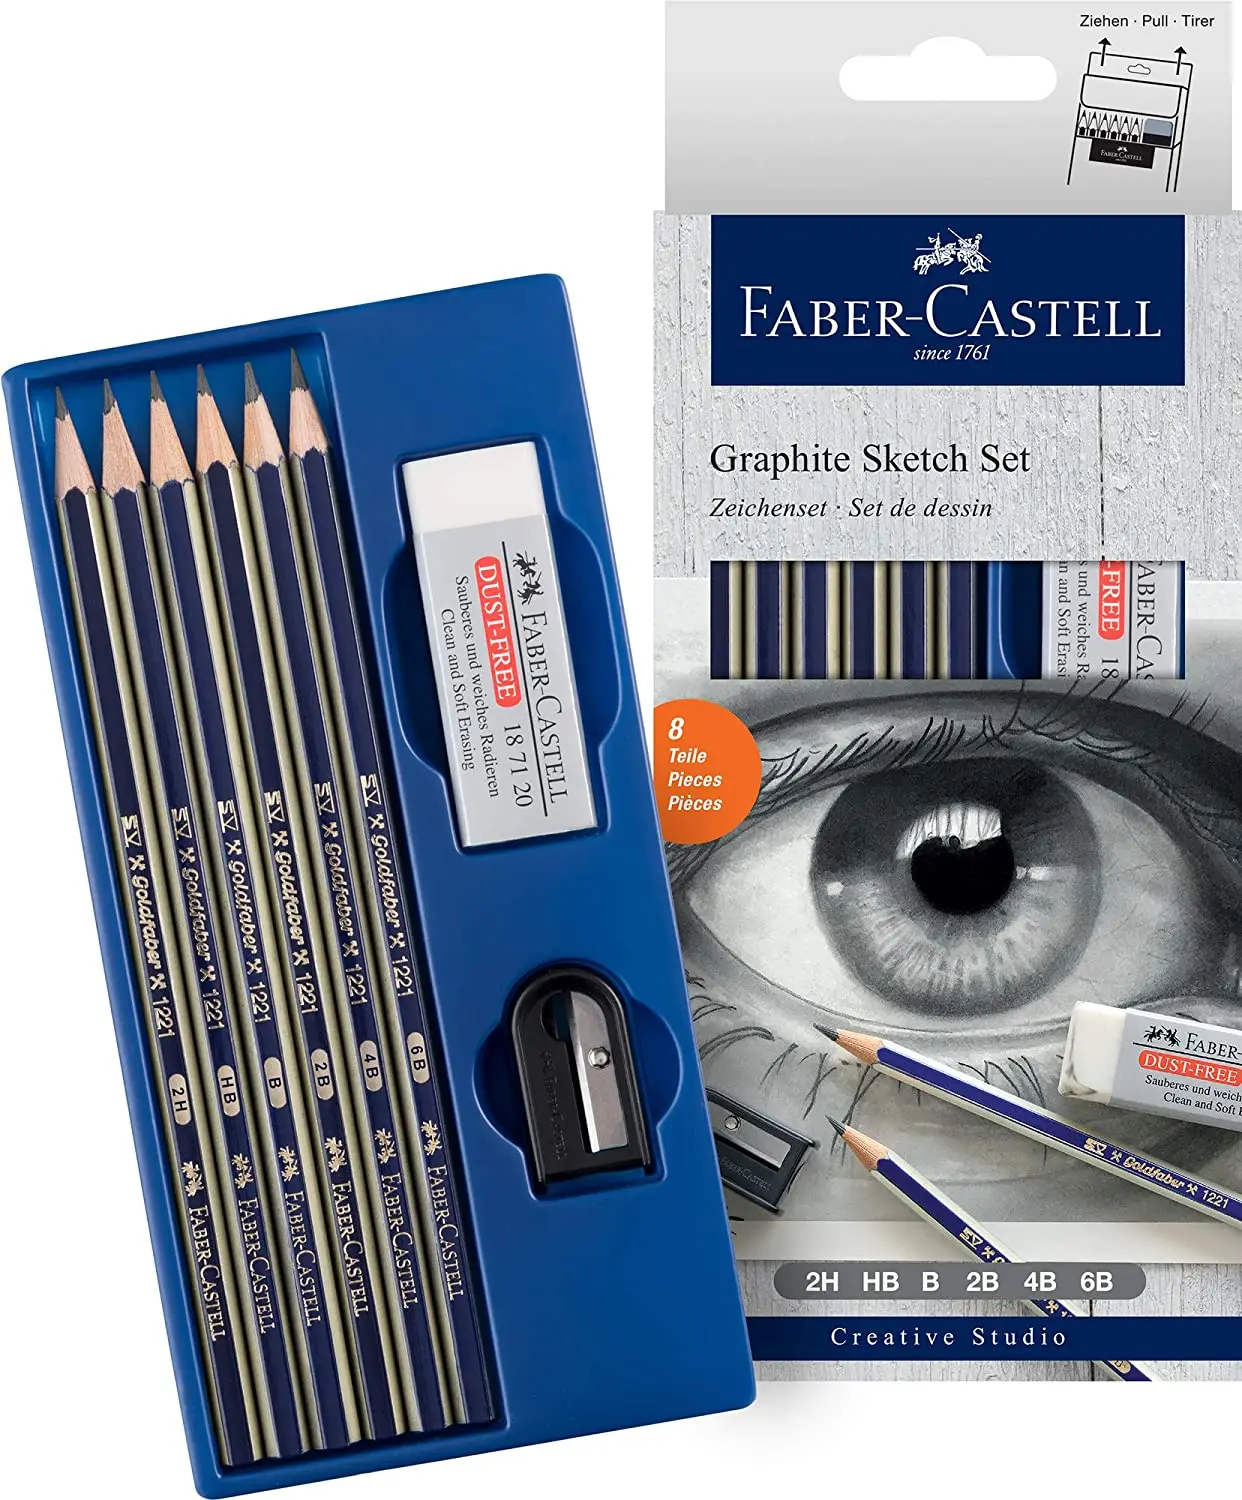 

Faber Castell Goldfaber Graphite Sketch Set Art Drawing Pen, Pencil-Sharpener-Eraser Set, original Product, Set Special